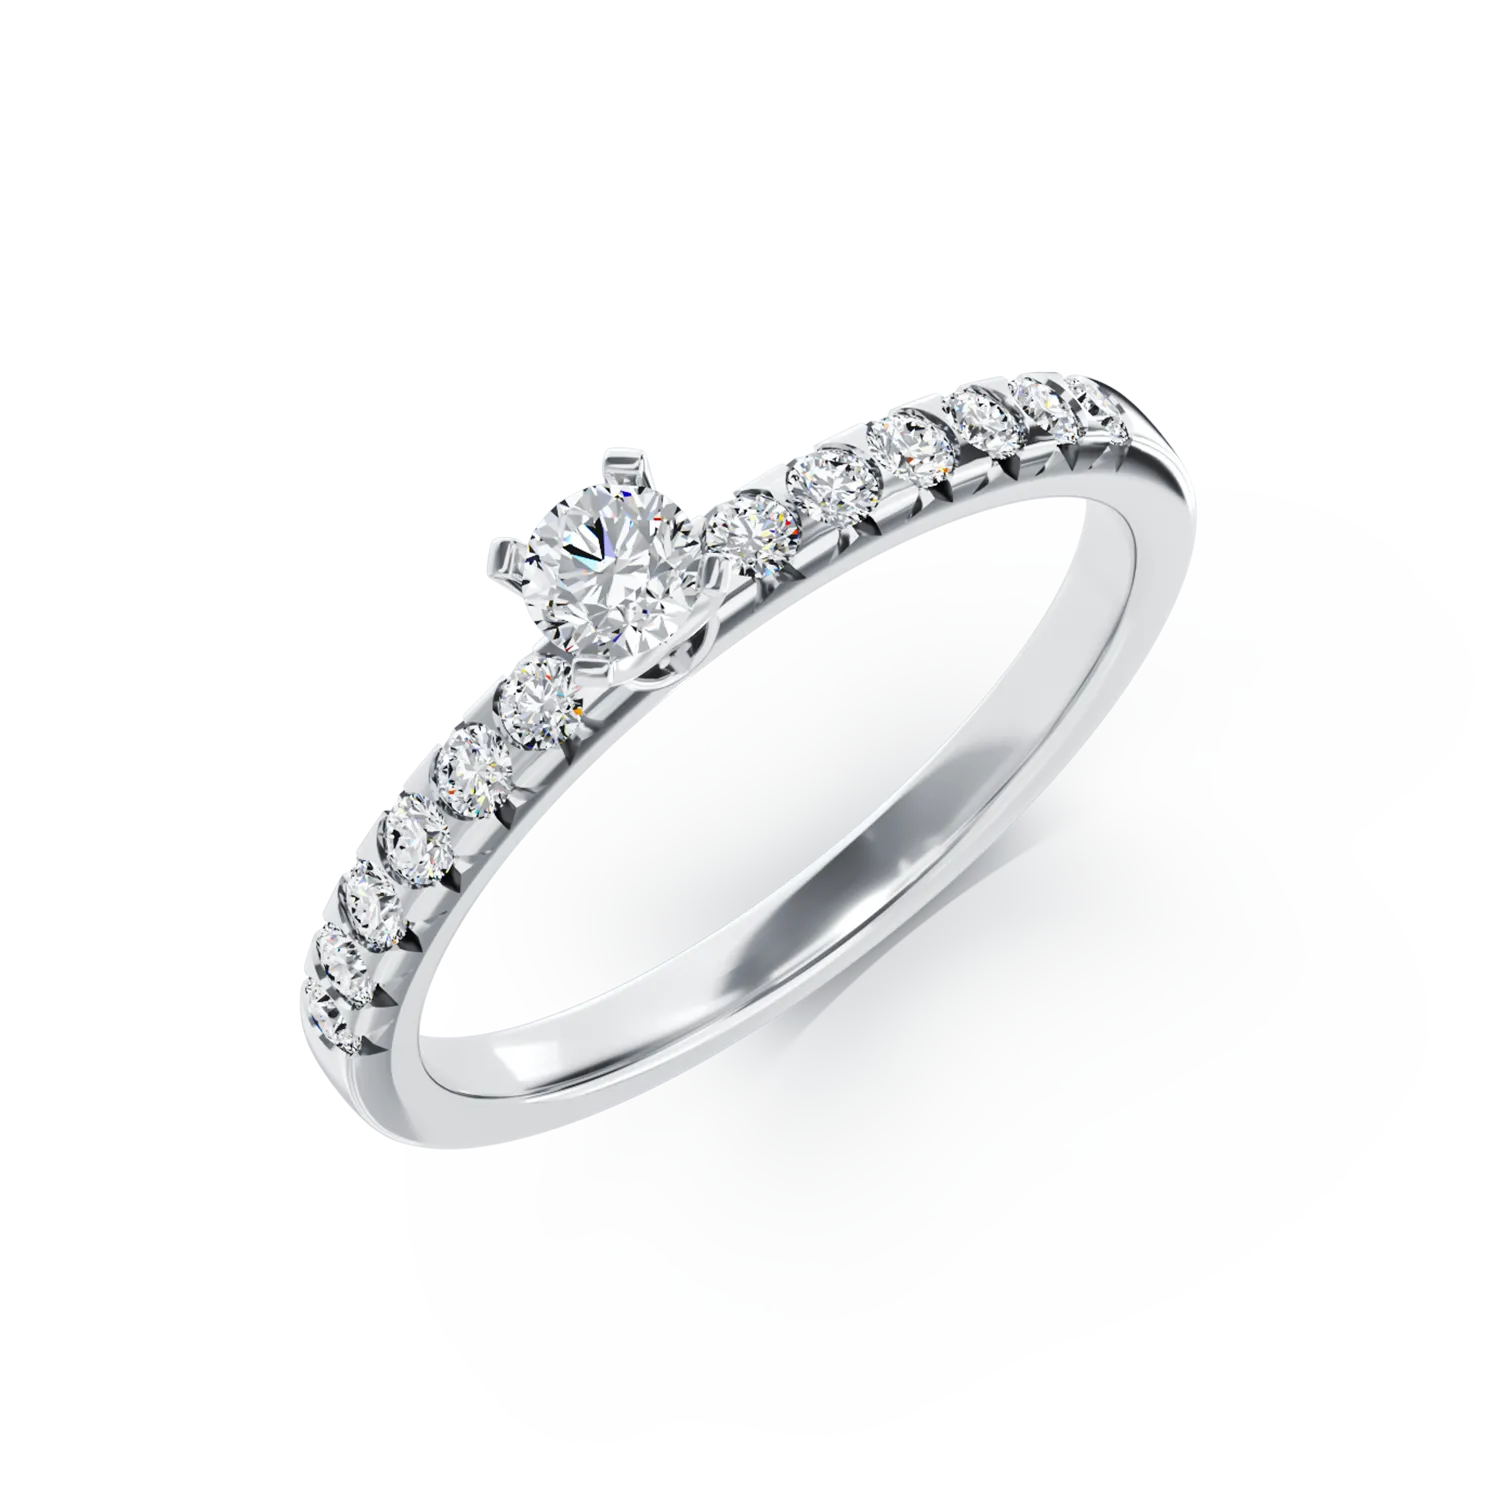 Eljegyzési gyűrű 18K-os fehér aranyból 0,25ct gyémánttal és 0,25ct gyémánttal. Gramm: 2,67